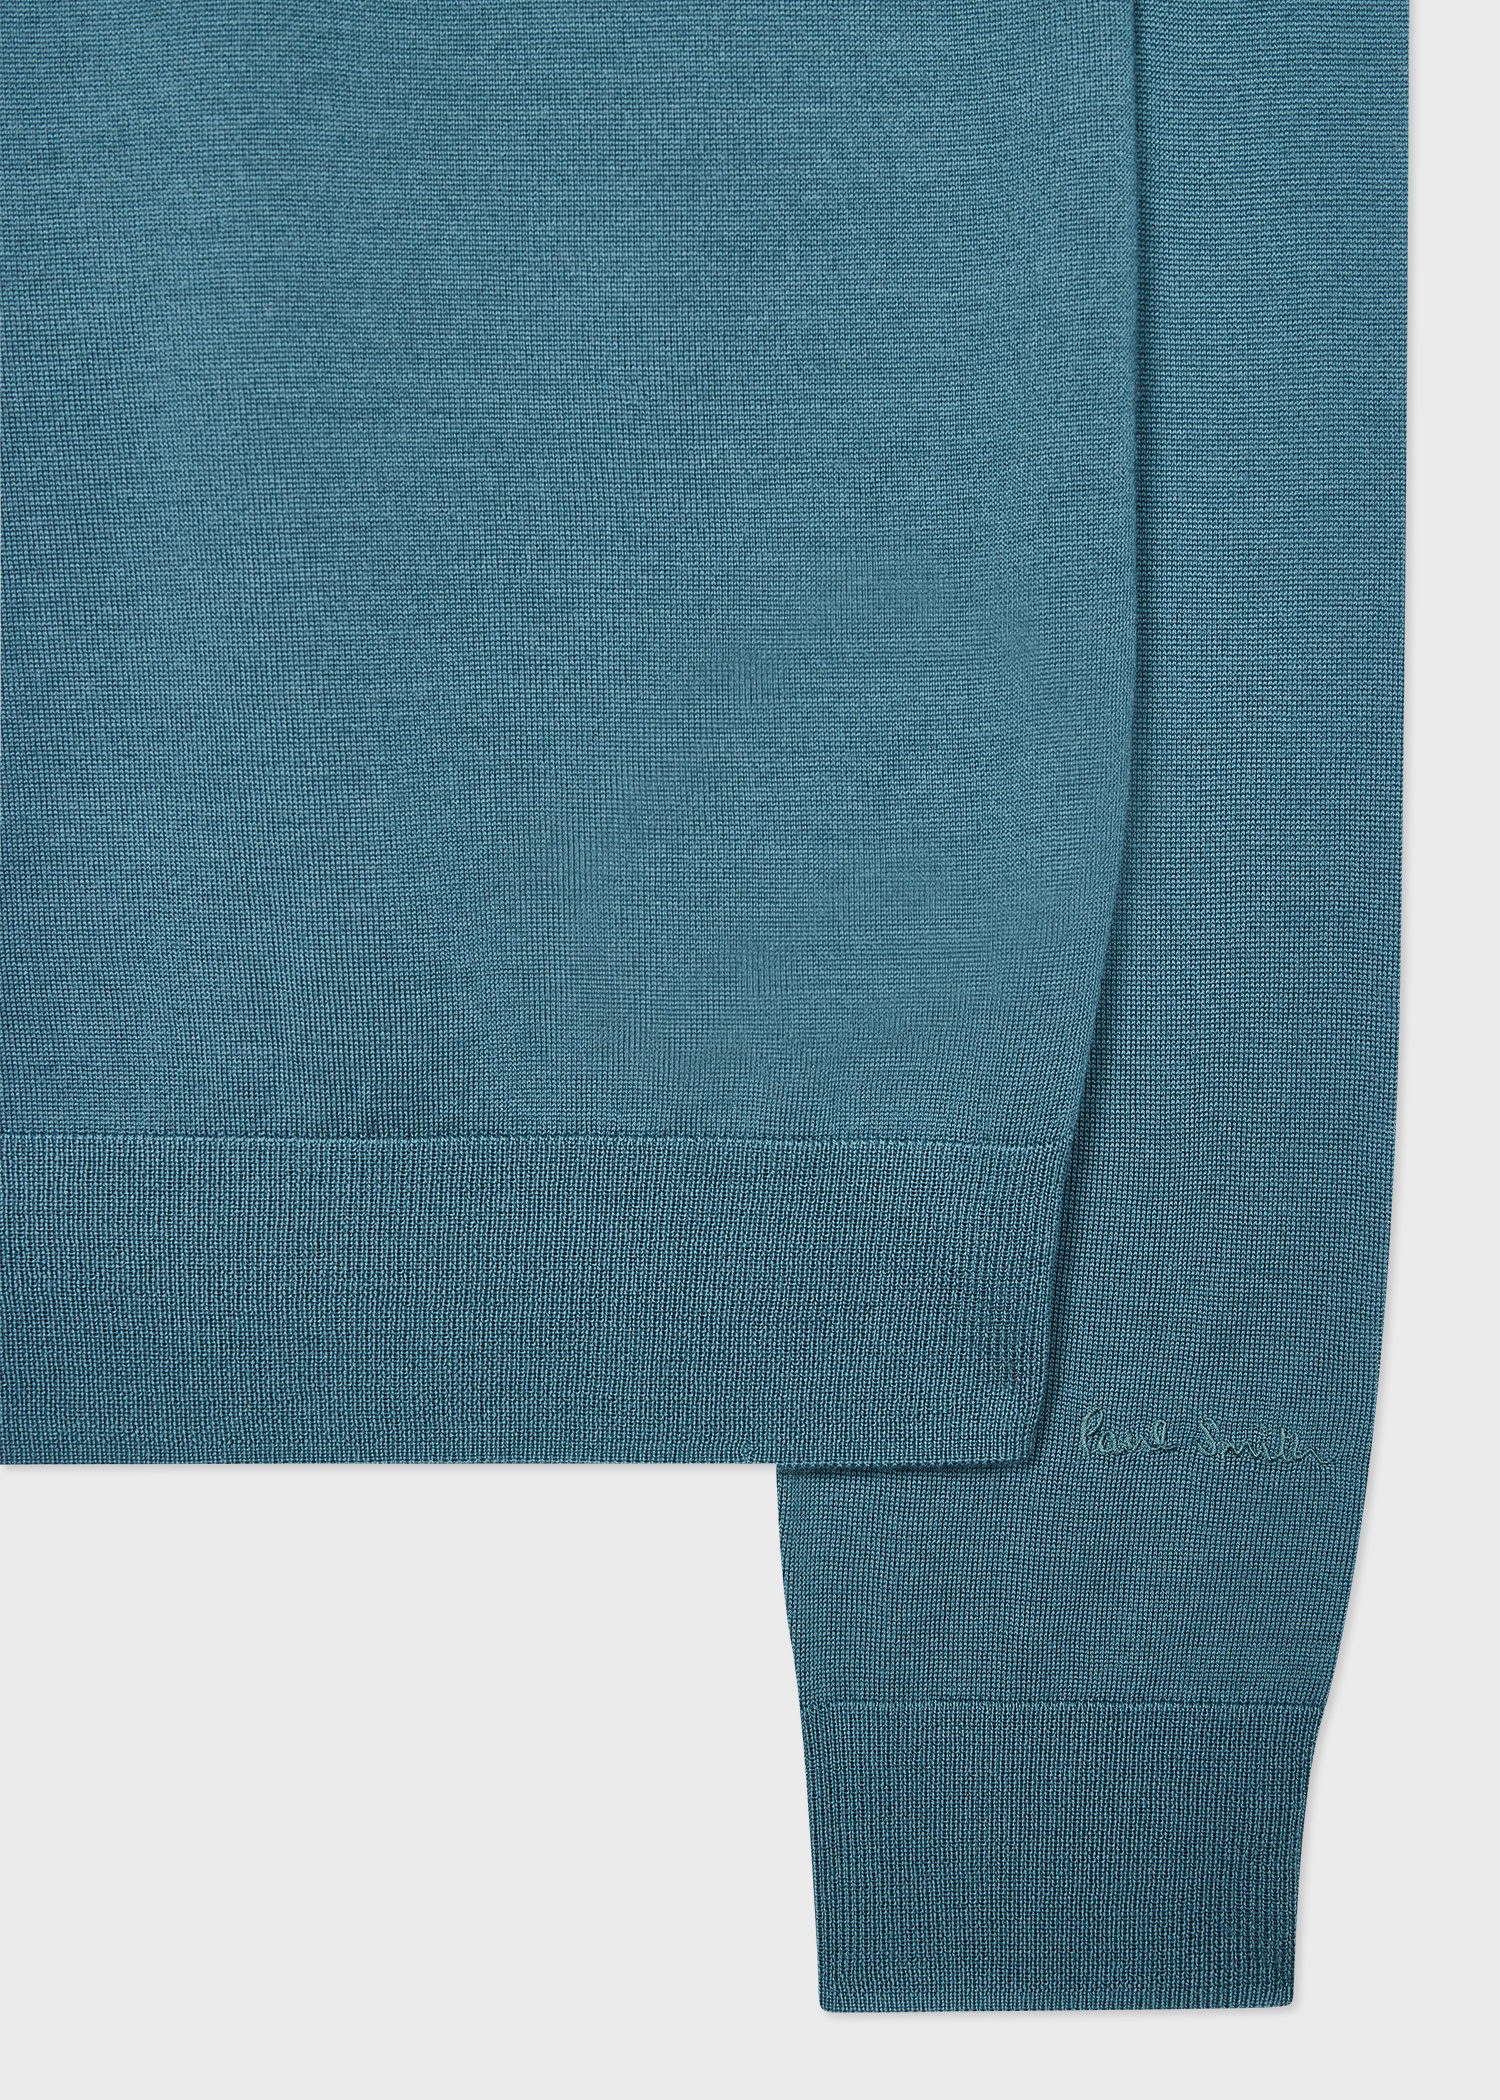 Teal Green Merino Wool Sweater - 2